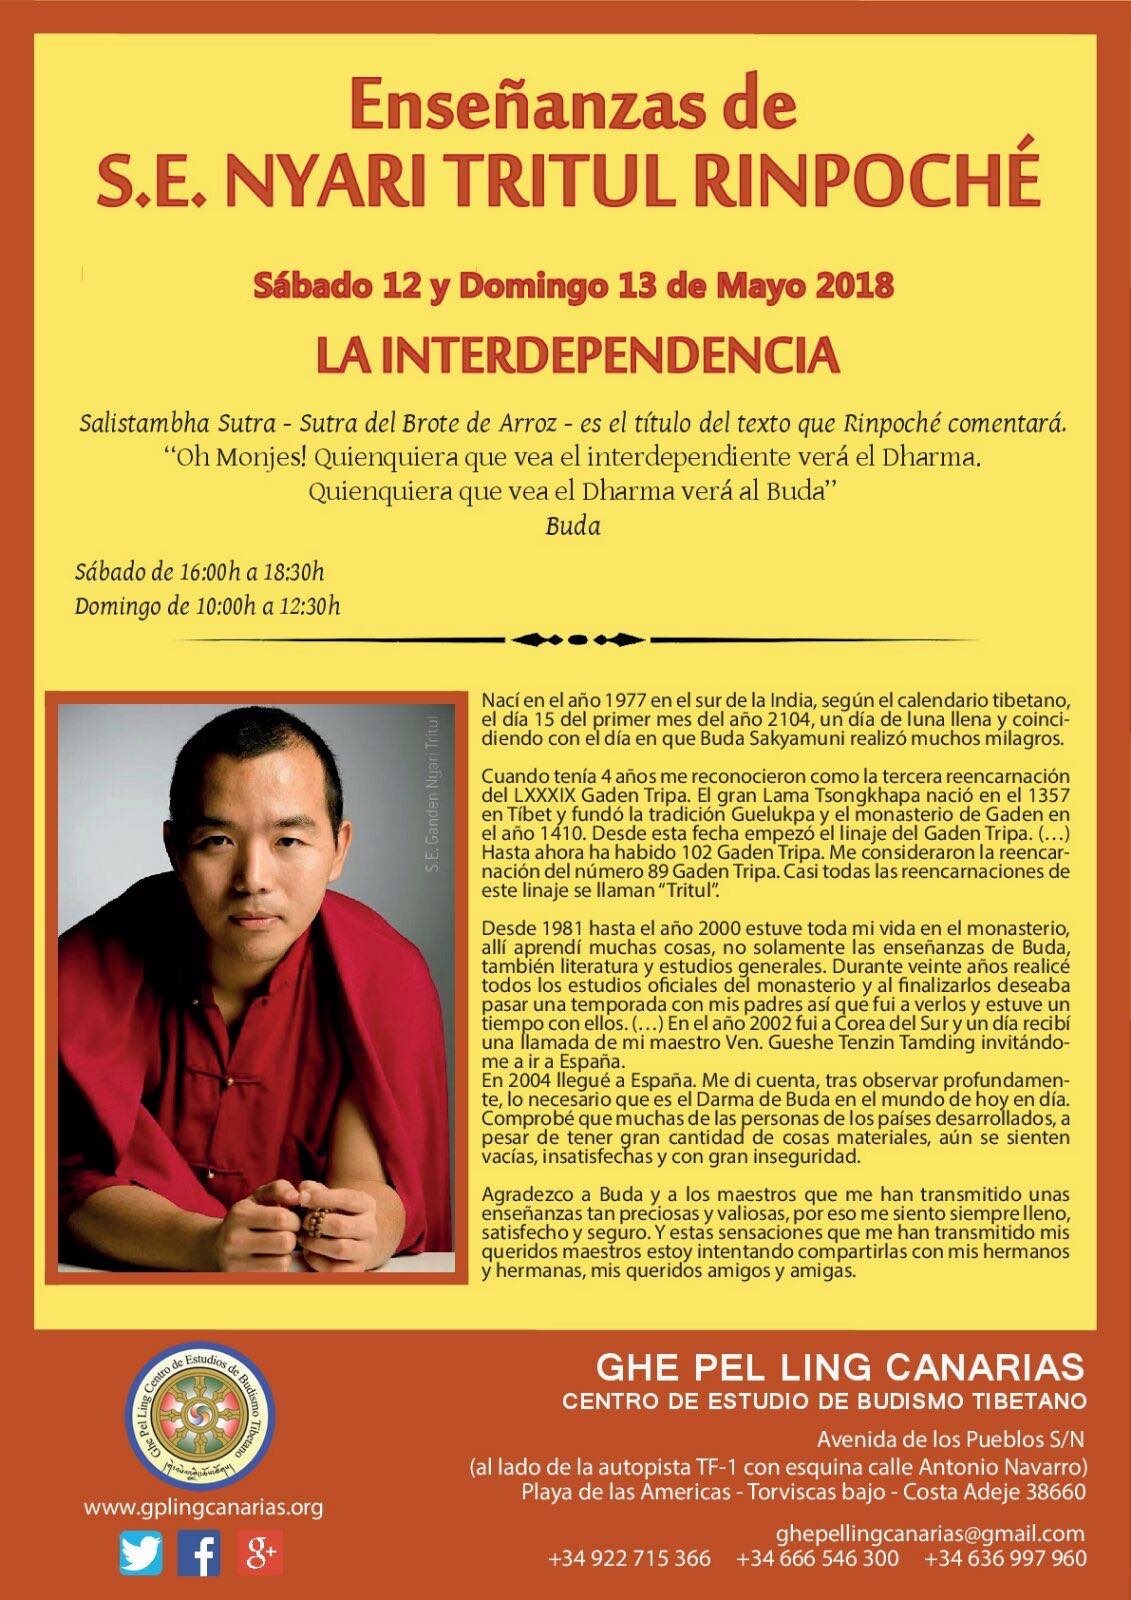 Enseñanzas Ven Tritul Rinpoche - La Interdependencia - 12 y 13 Mayo 2018 - Centro Budismo Tibetanto GhePelLing Canarias - Tenerife Sur